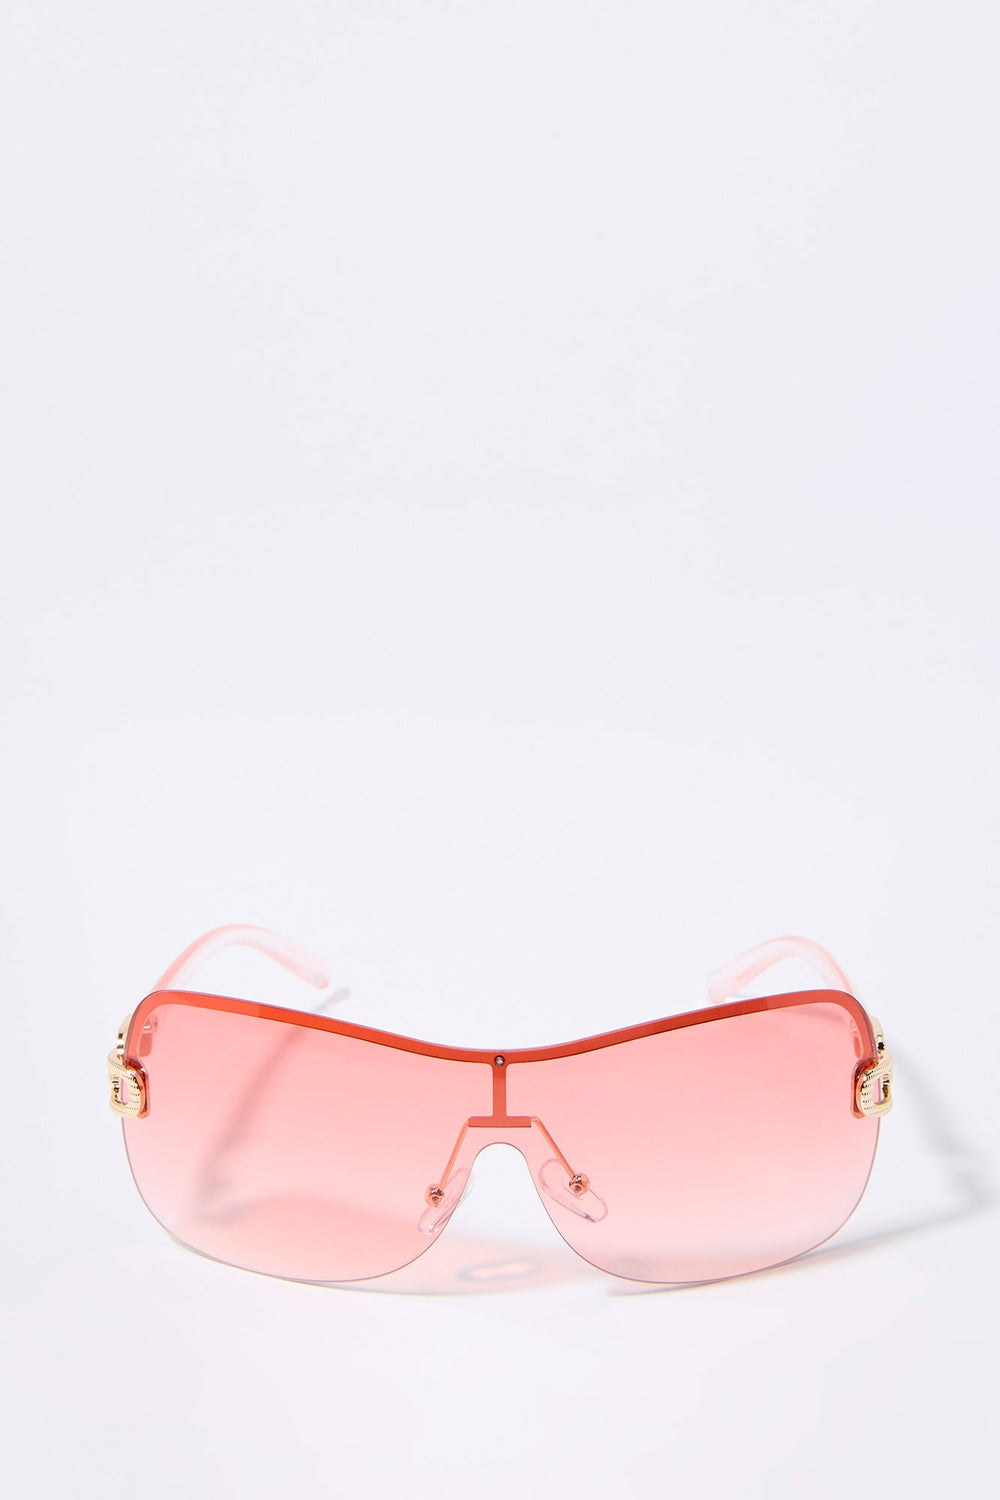 Colored Rimless Shield Sunglasses Colored Rimless Shield Sunglasses 4